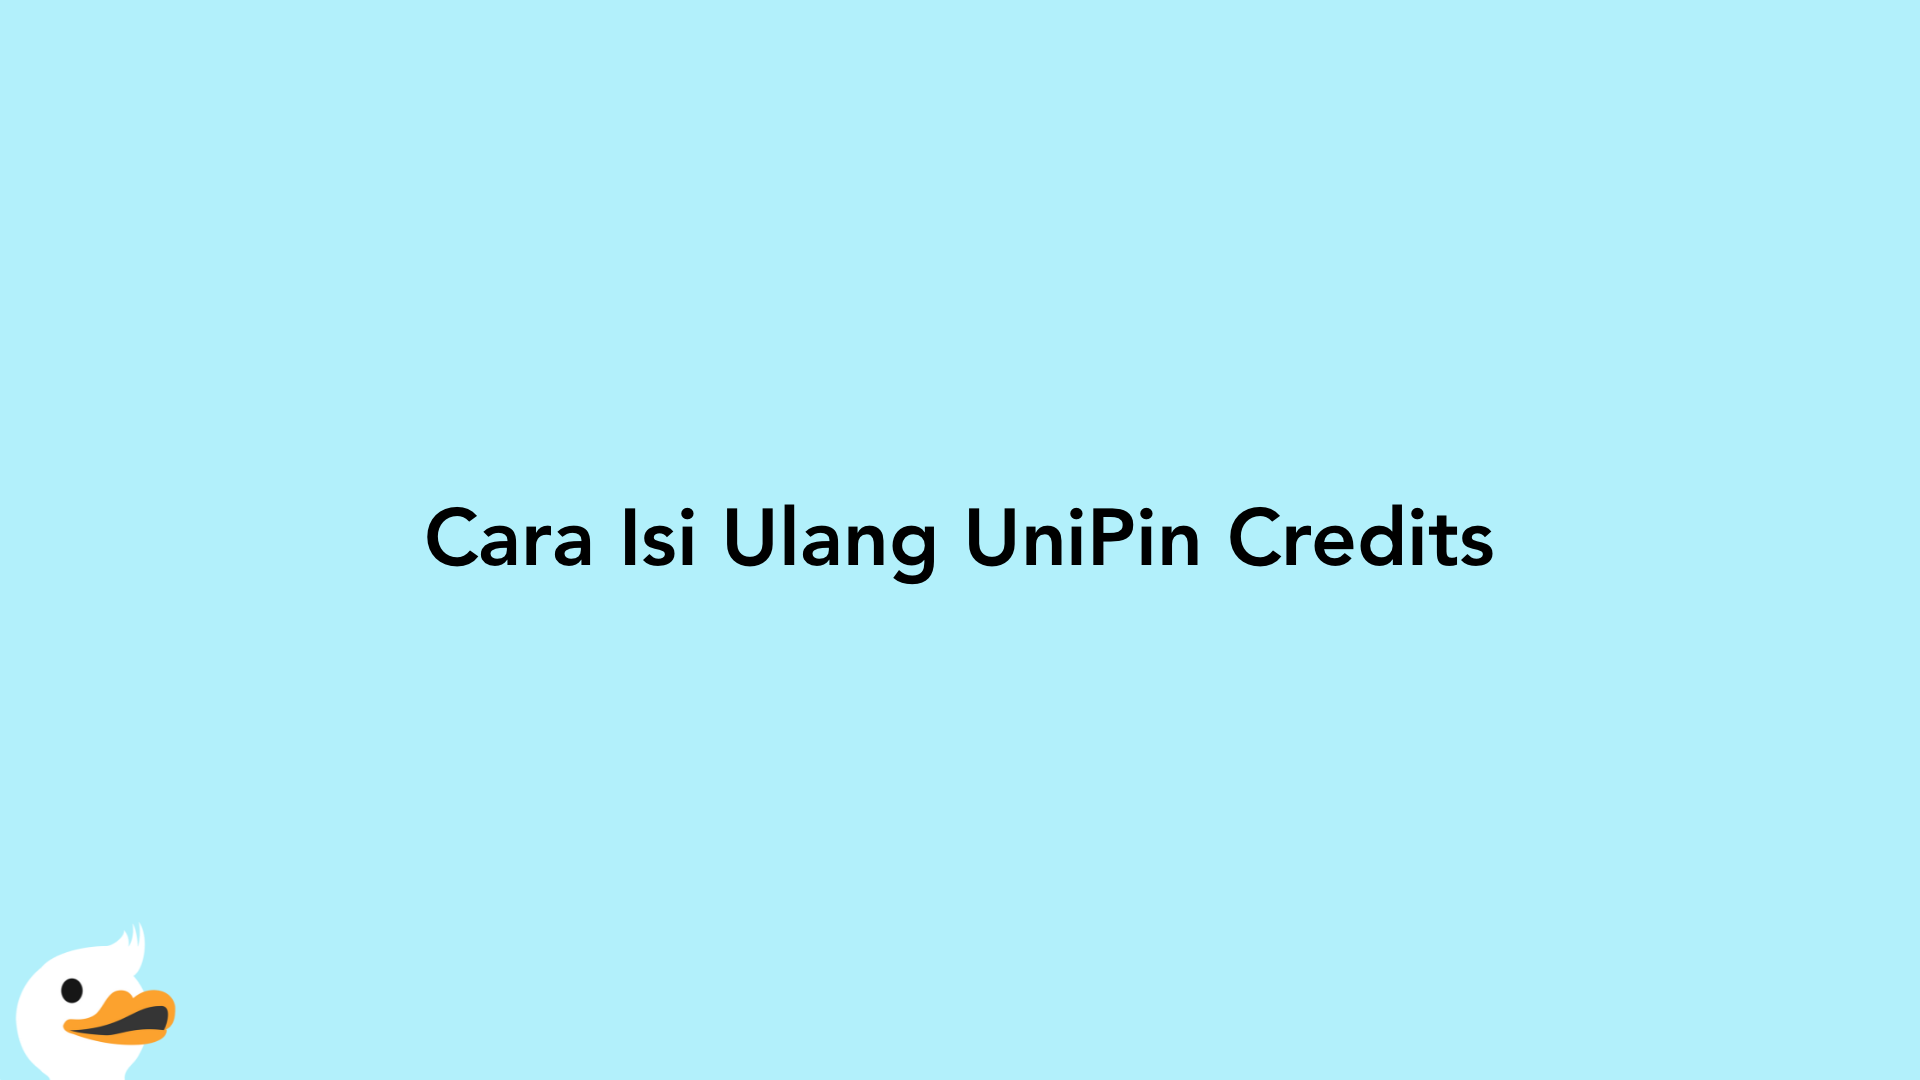 Cara Isi Ulang UniPin Credits